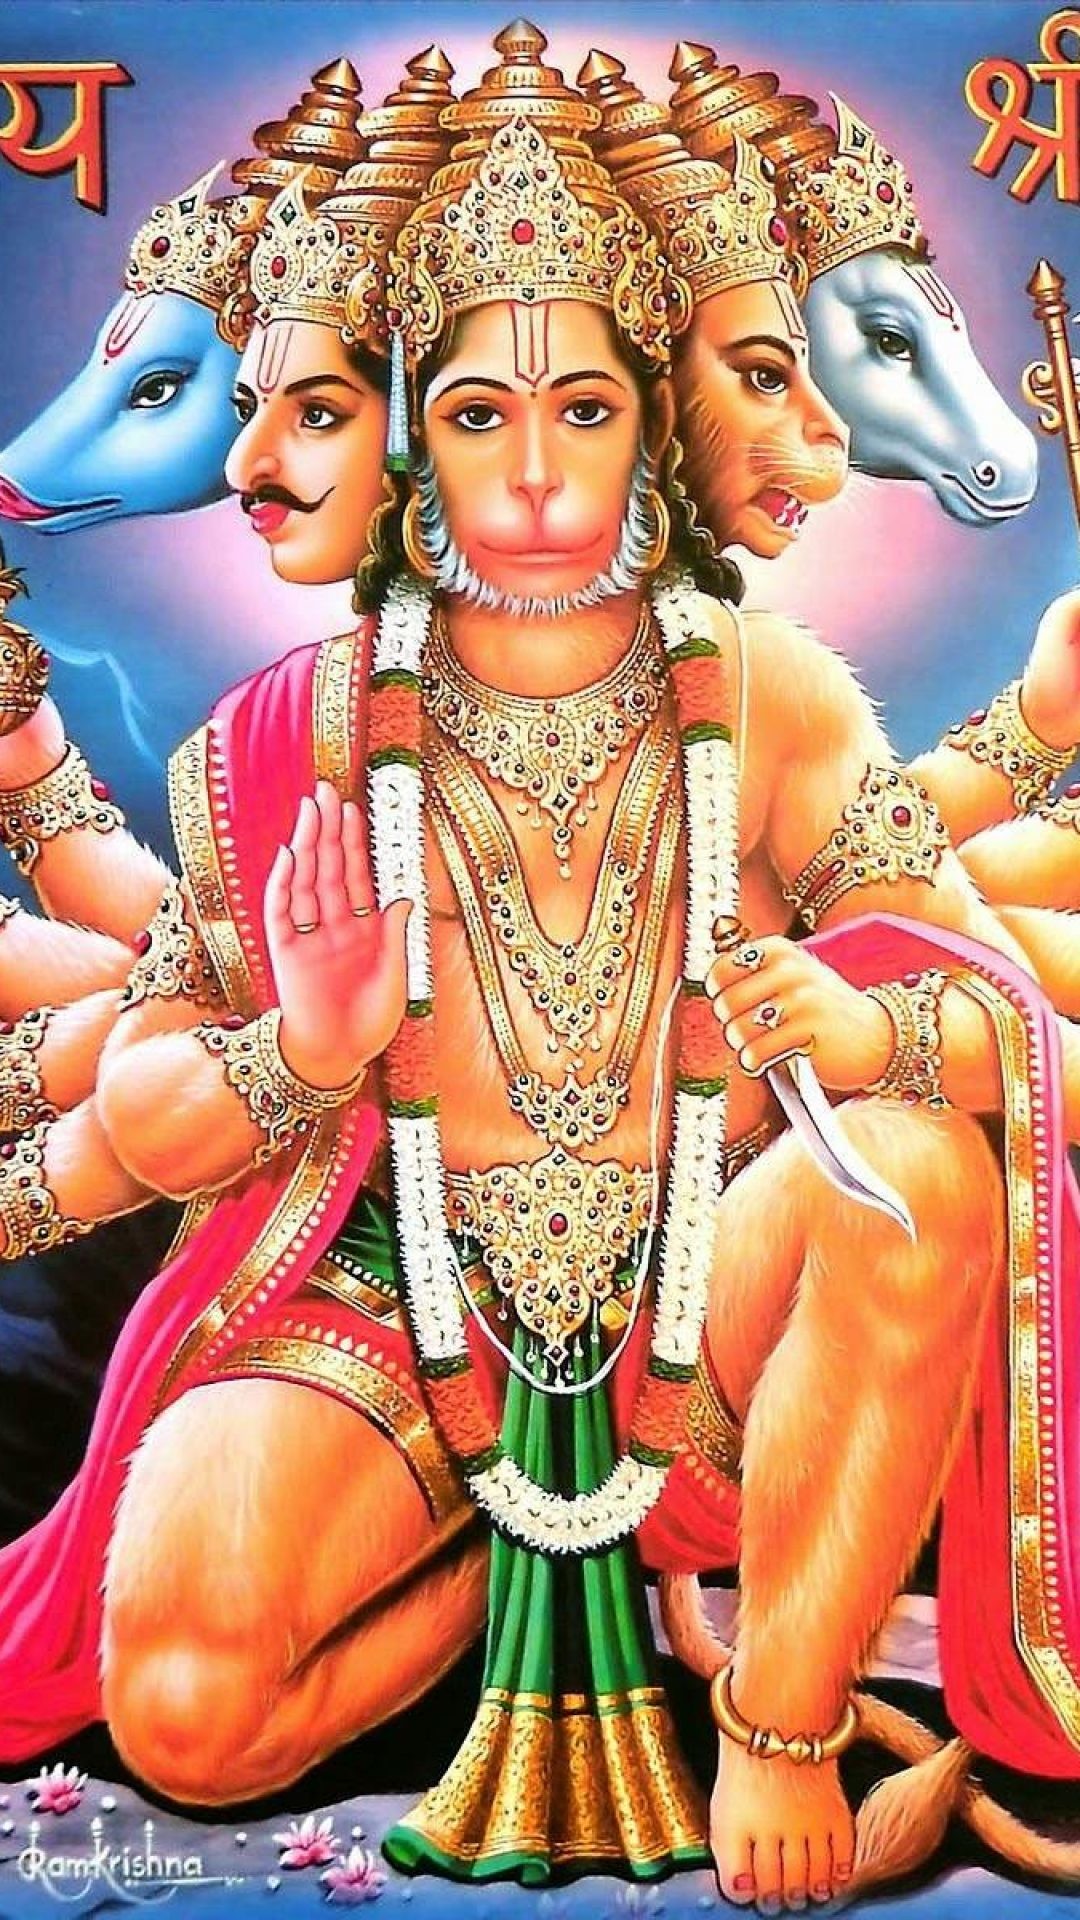 1080x1920 Hd Wallpaper Of God Hanuman